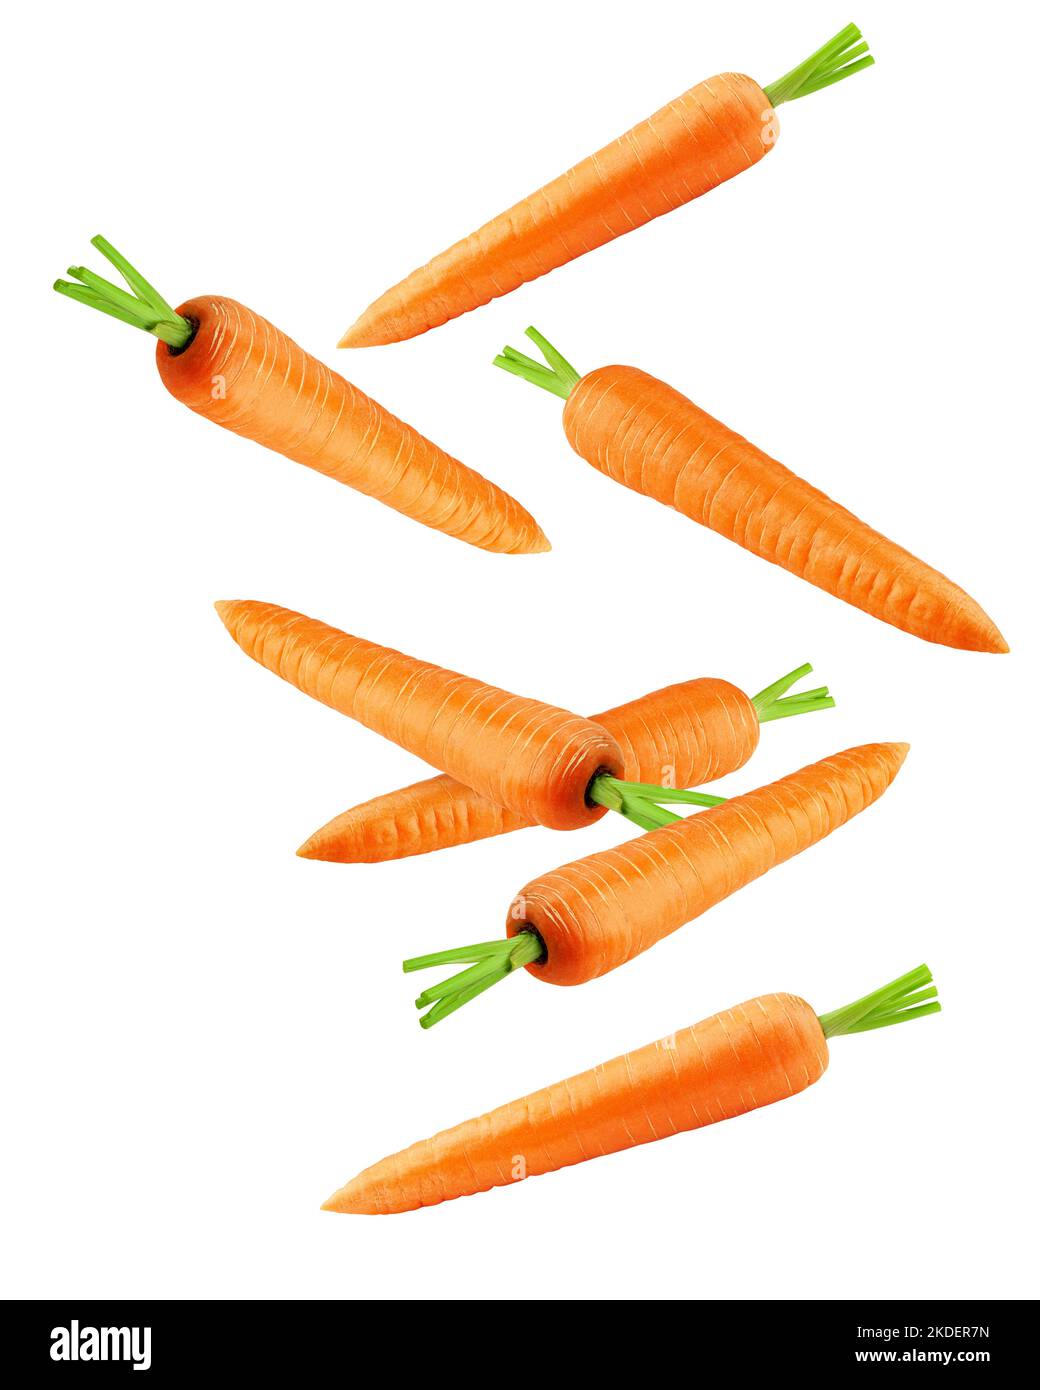 Fallende Karotte isoliert auf weißem Hintergrund, Schnittpfad, volle Schärfentiefe Stockfoto